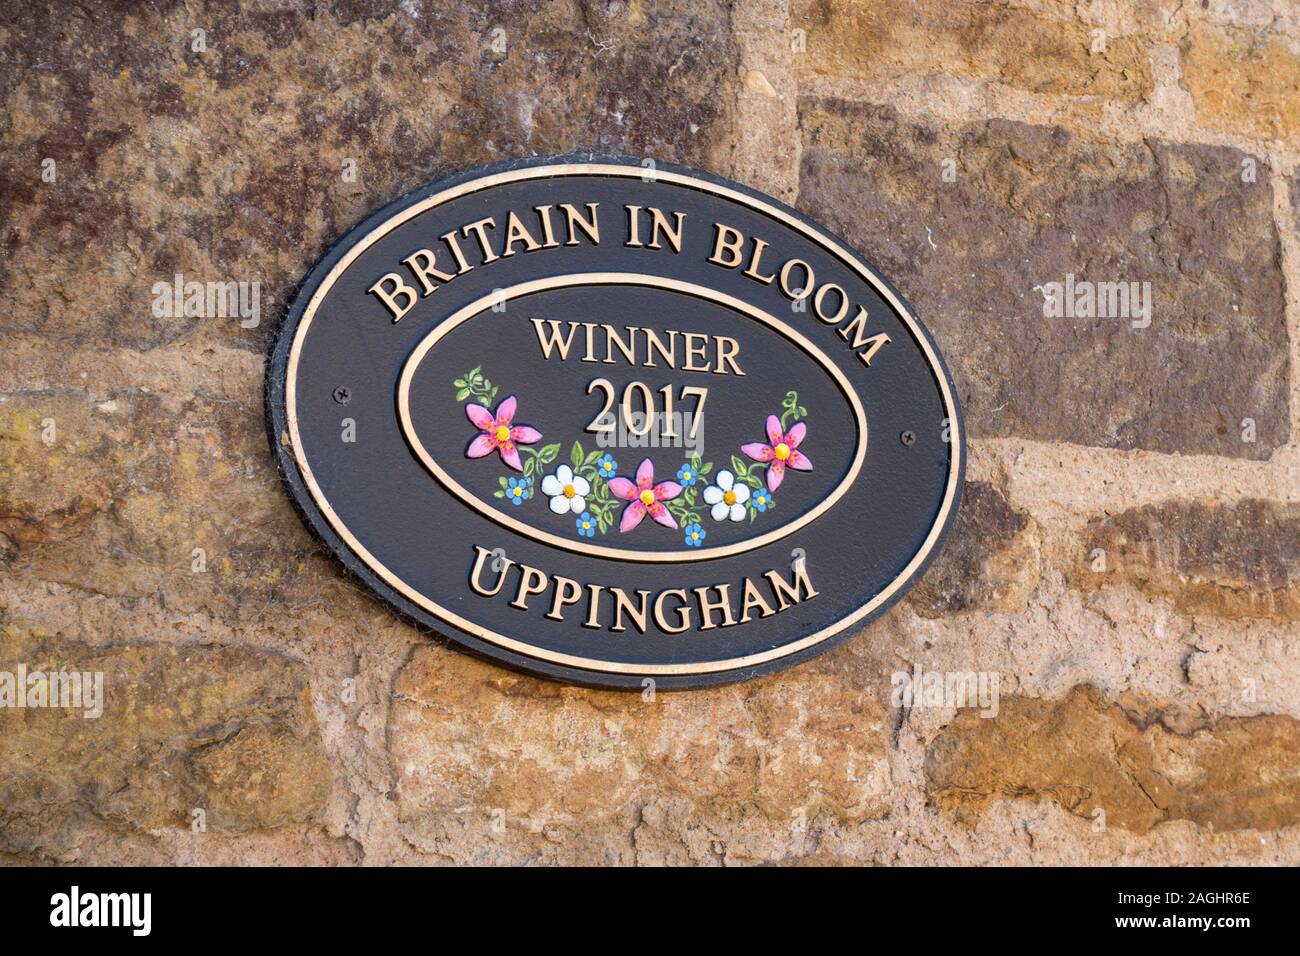 Oval Gedenktafel zur Erinnerung an Uppingham Sieger 2017 Britain in Bloom, Rutland, England, Großbritannien Stockfoto